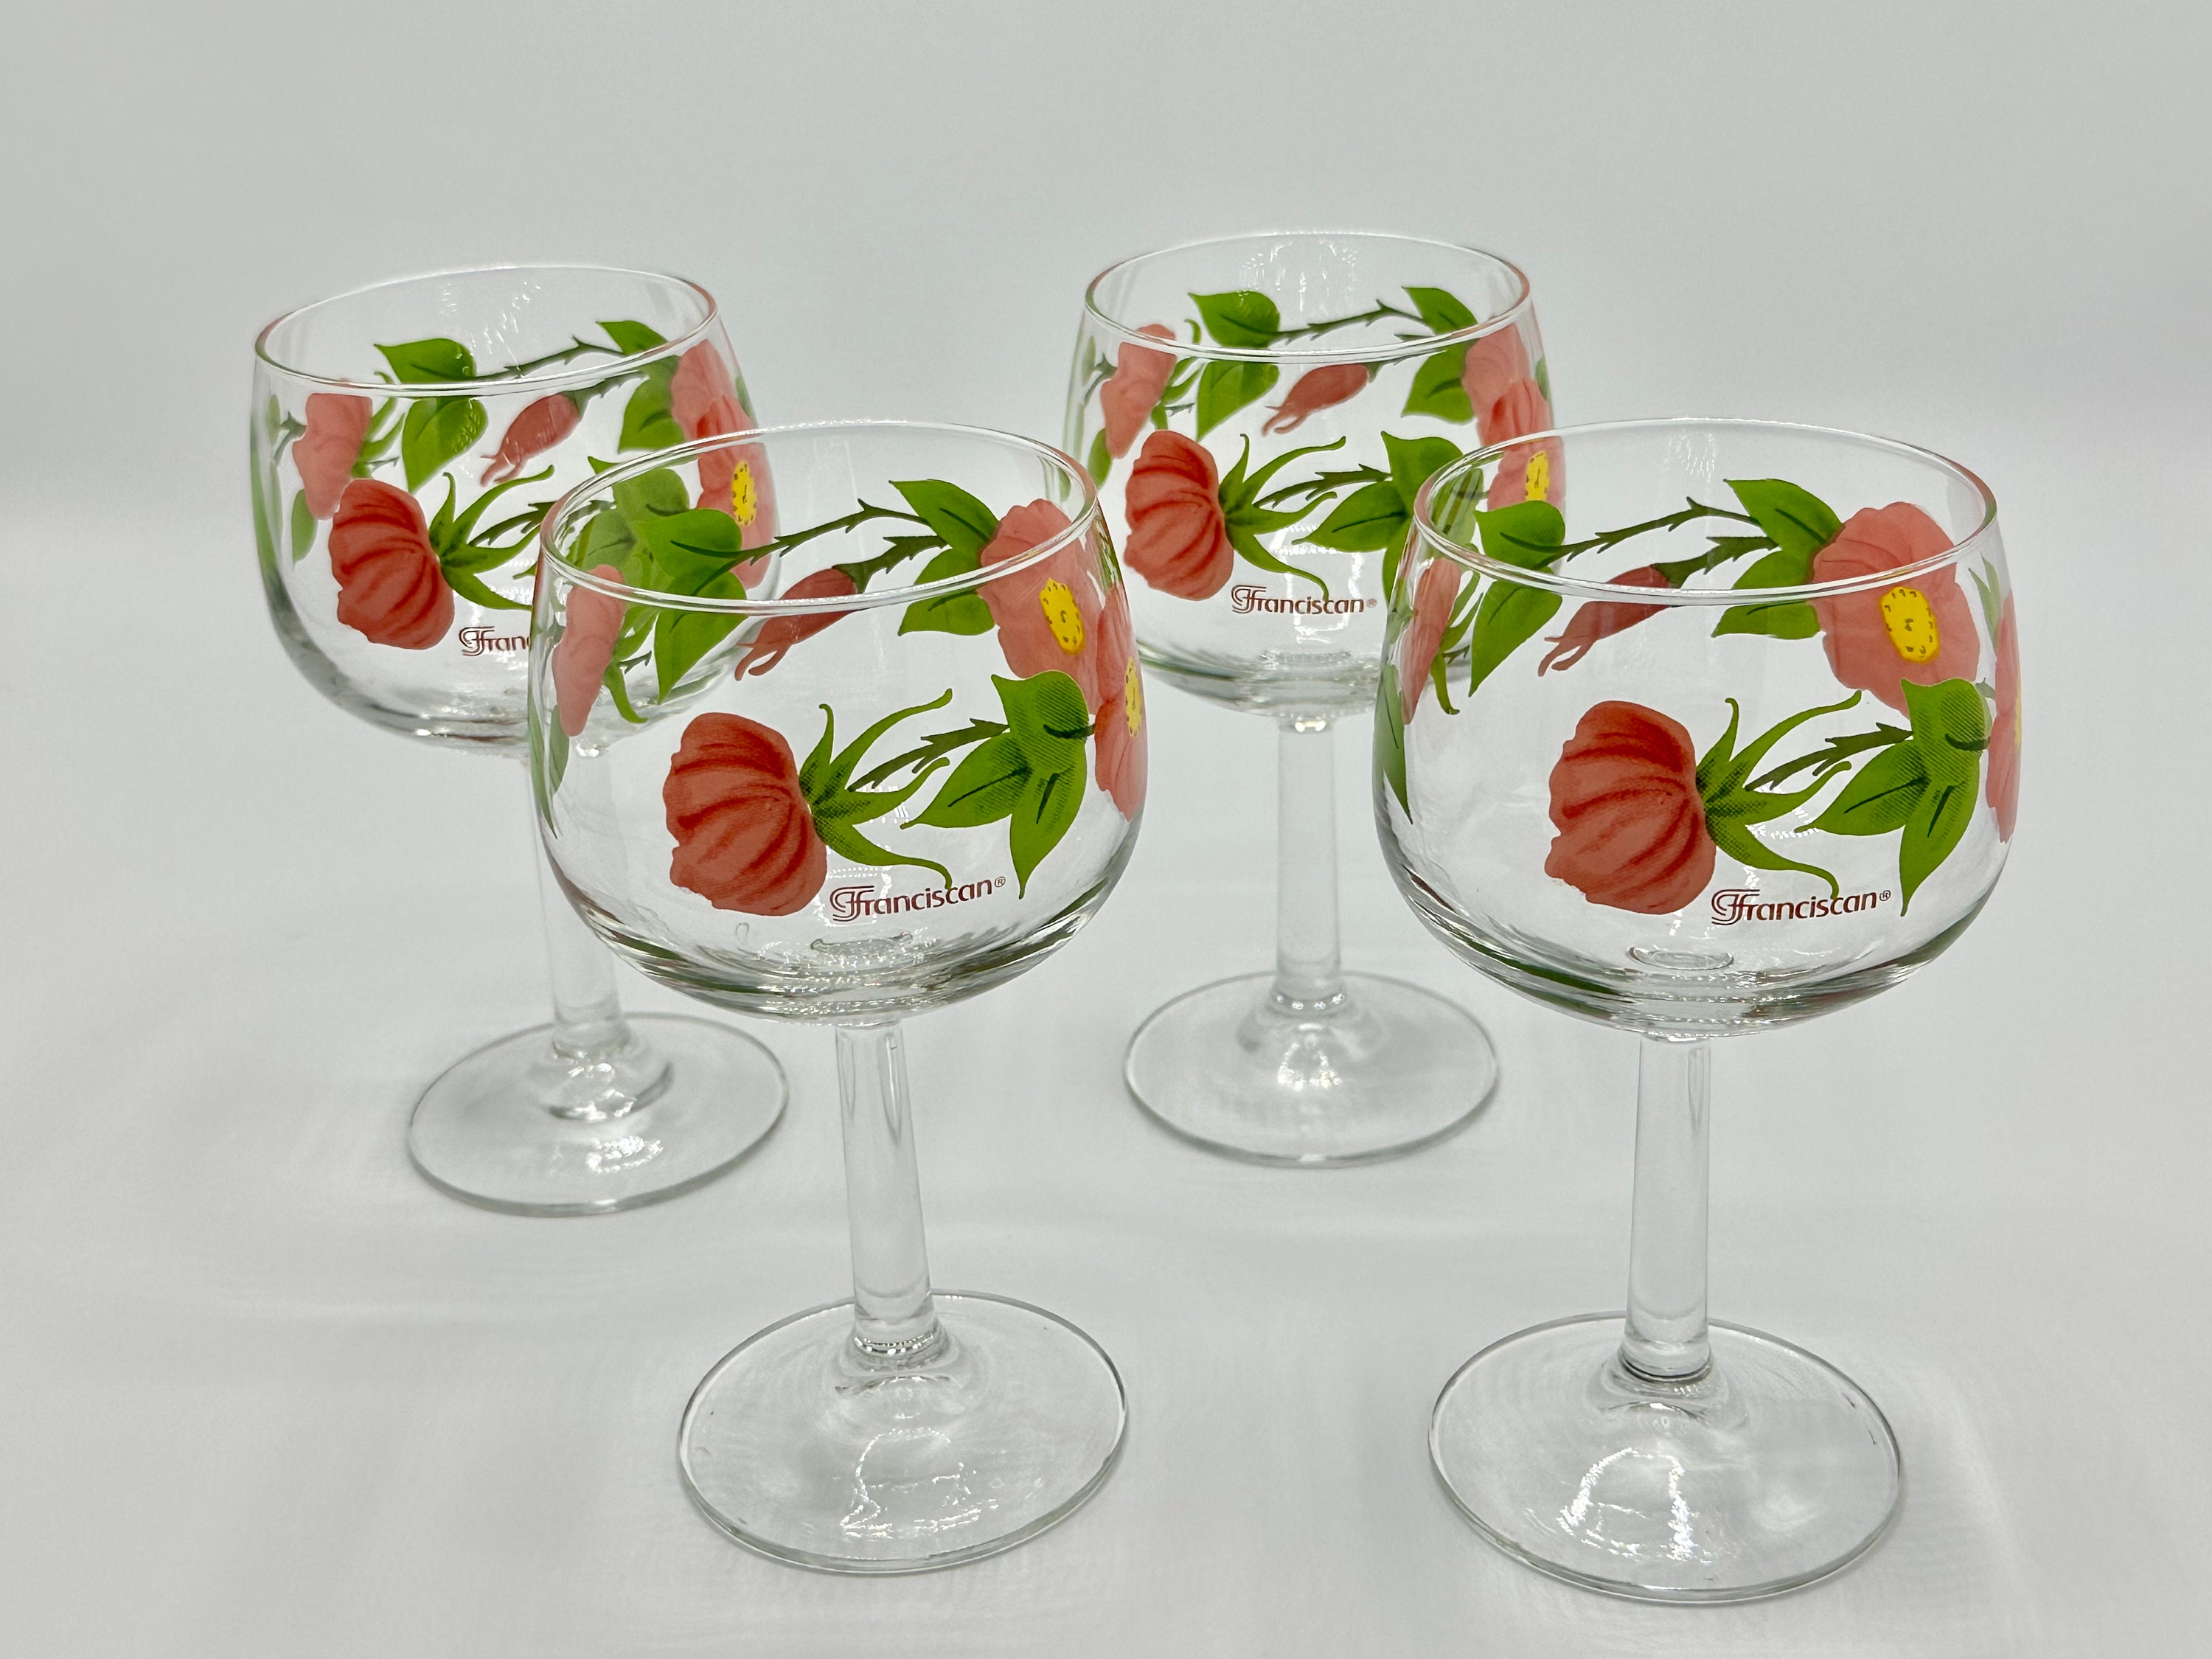 Vintage Franciscan Desert Rose Wine Glasses Set of 2 Made in